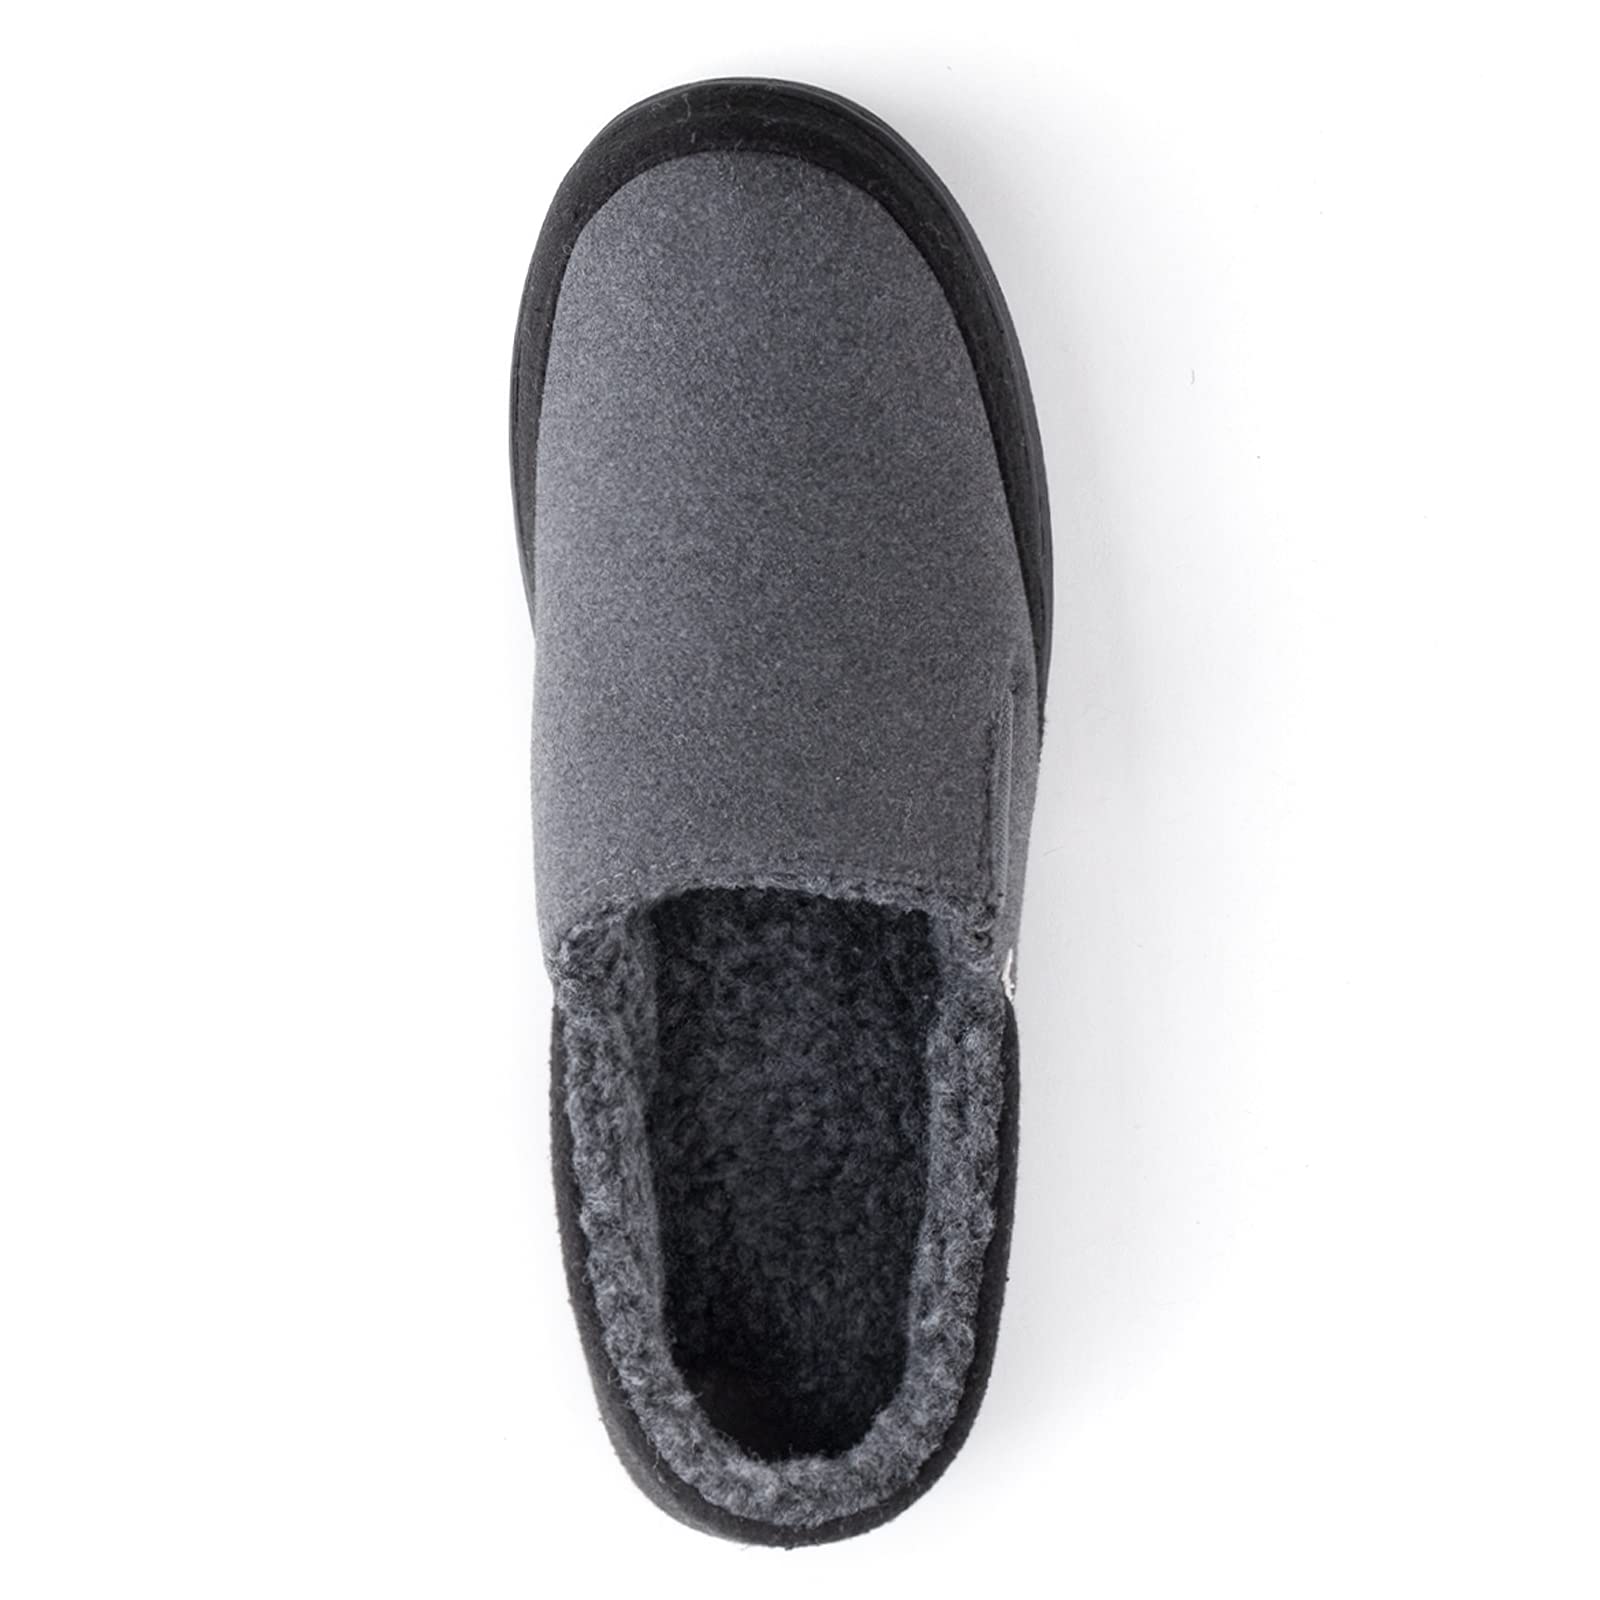 Zigzagger Men's Zermatt Wool-blend Loafer Slippers with Memory Foam Indoor